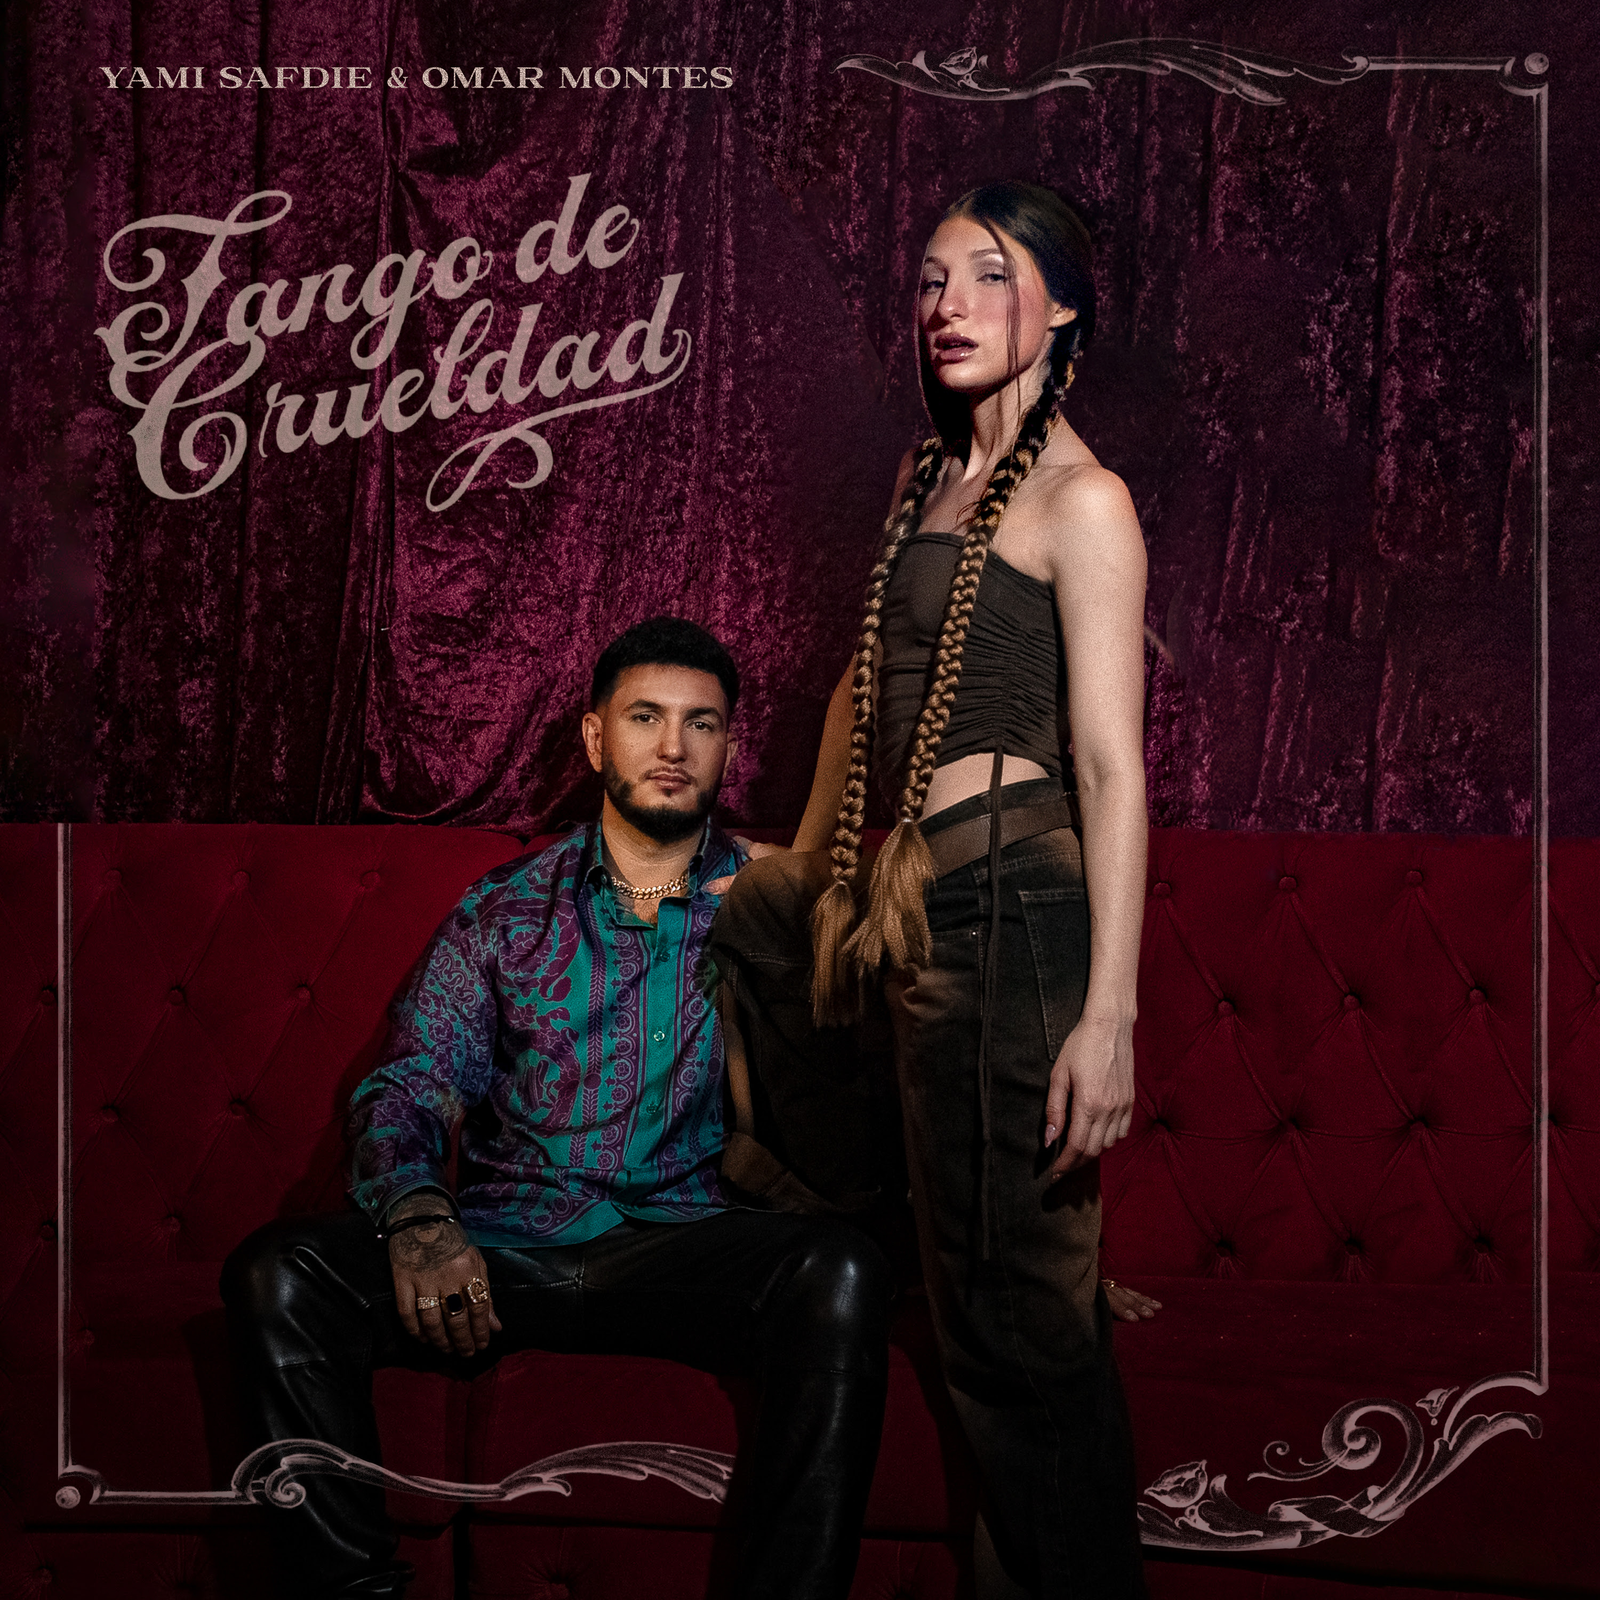 Llega “Tango de Crueldad” de Yami Safdie junto a Omar Montes